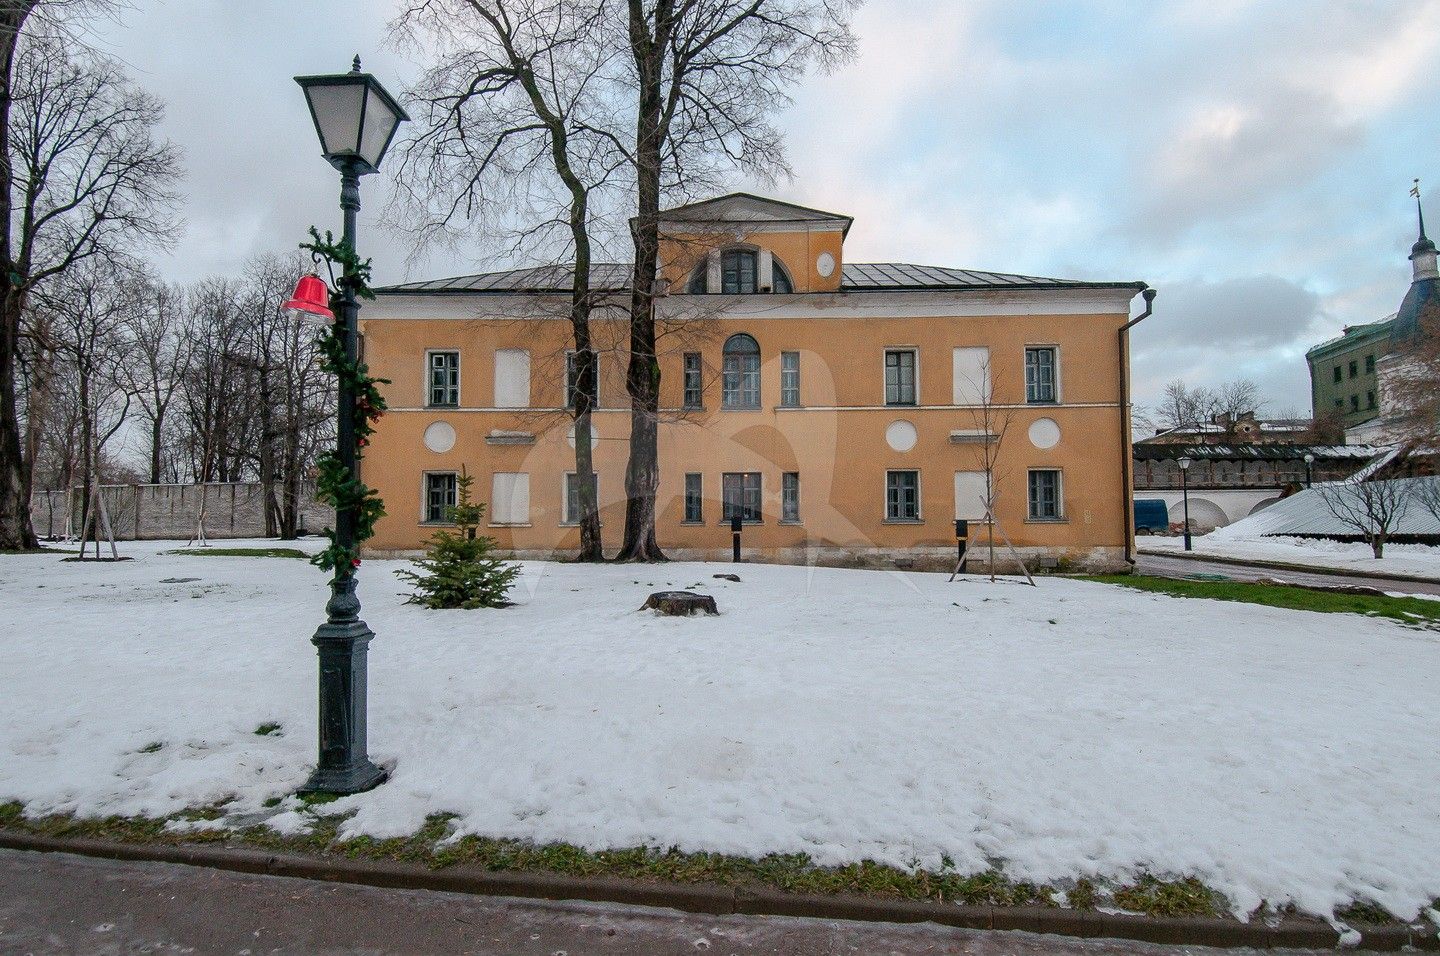 Здание бывшего Духовного училища, 1810-1814 гг., Андронников монастырь